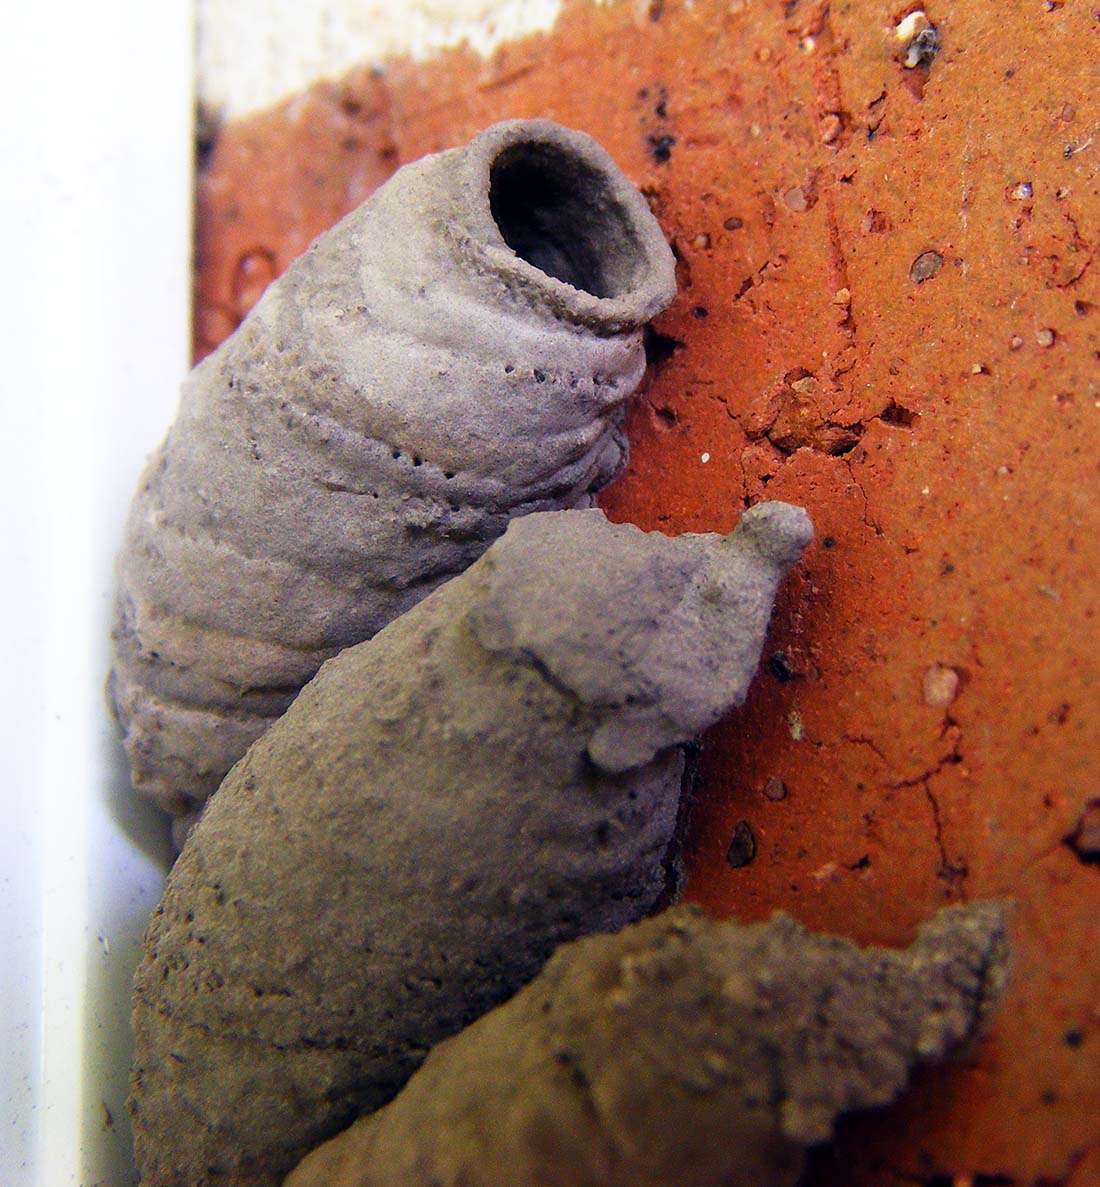 Vase-cell Mud-dauber Wasp Nest